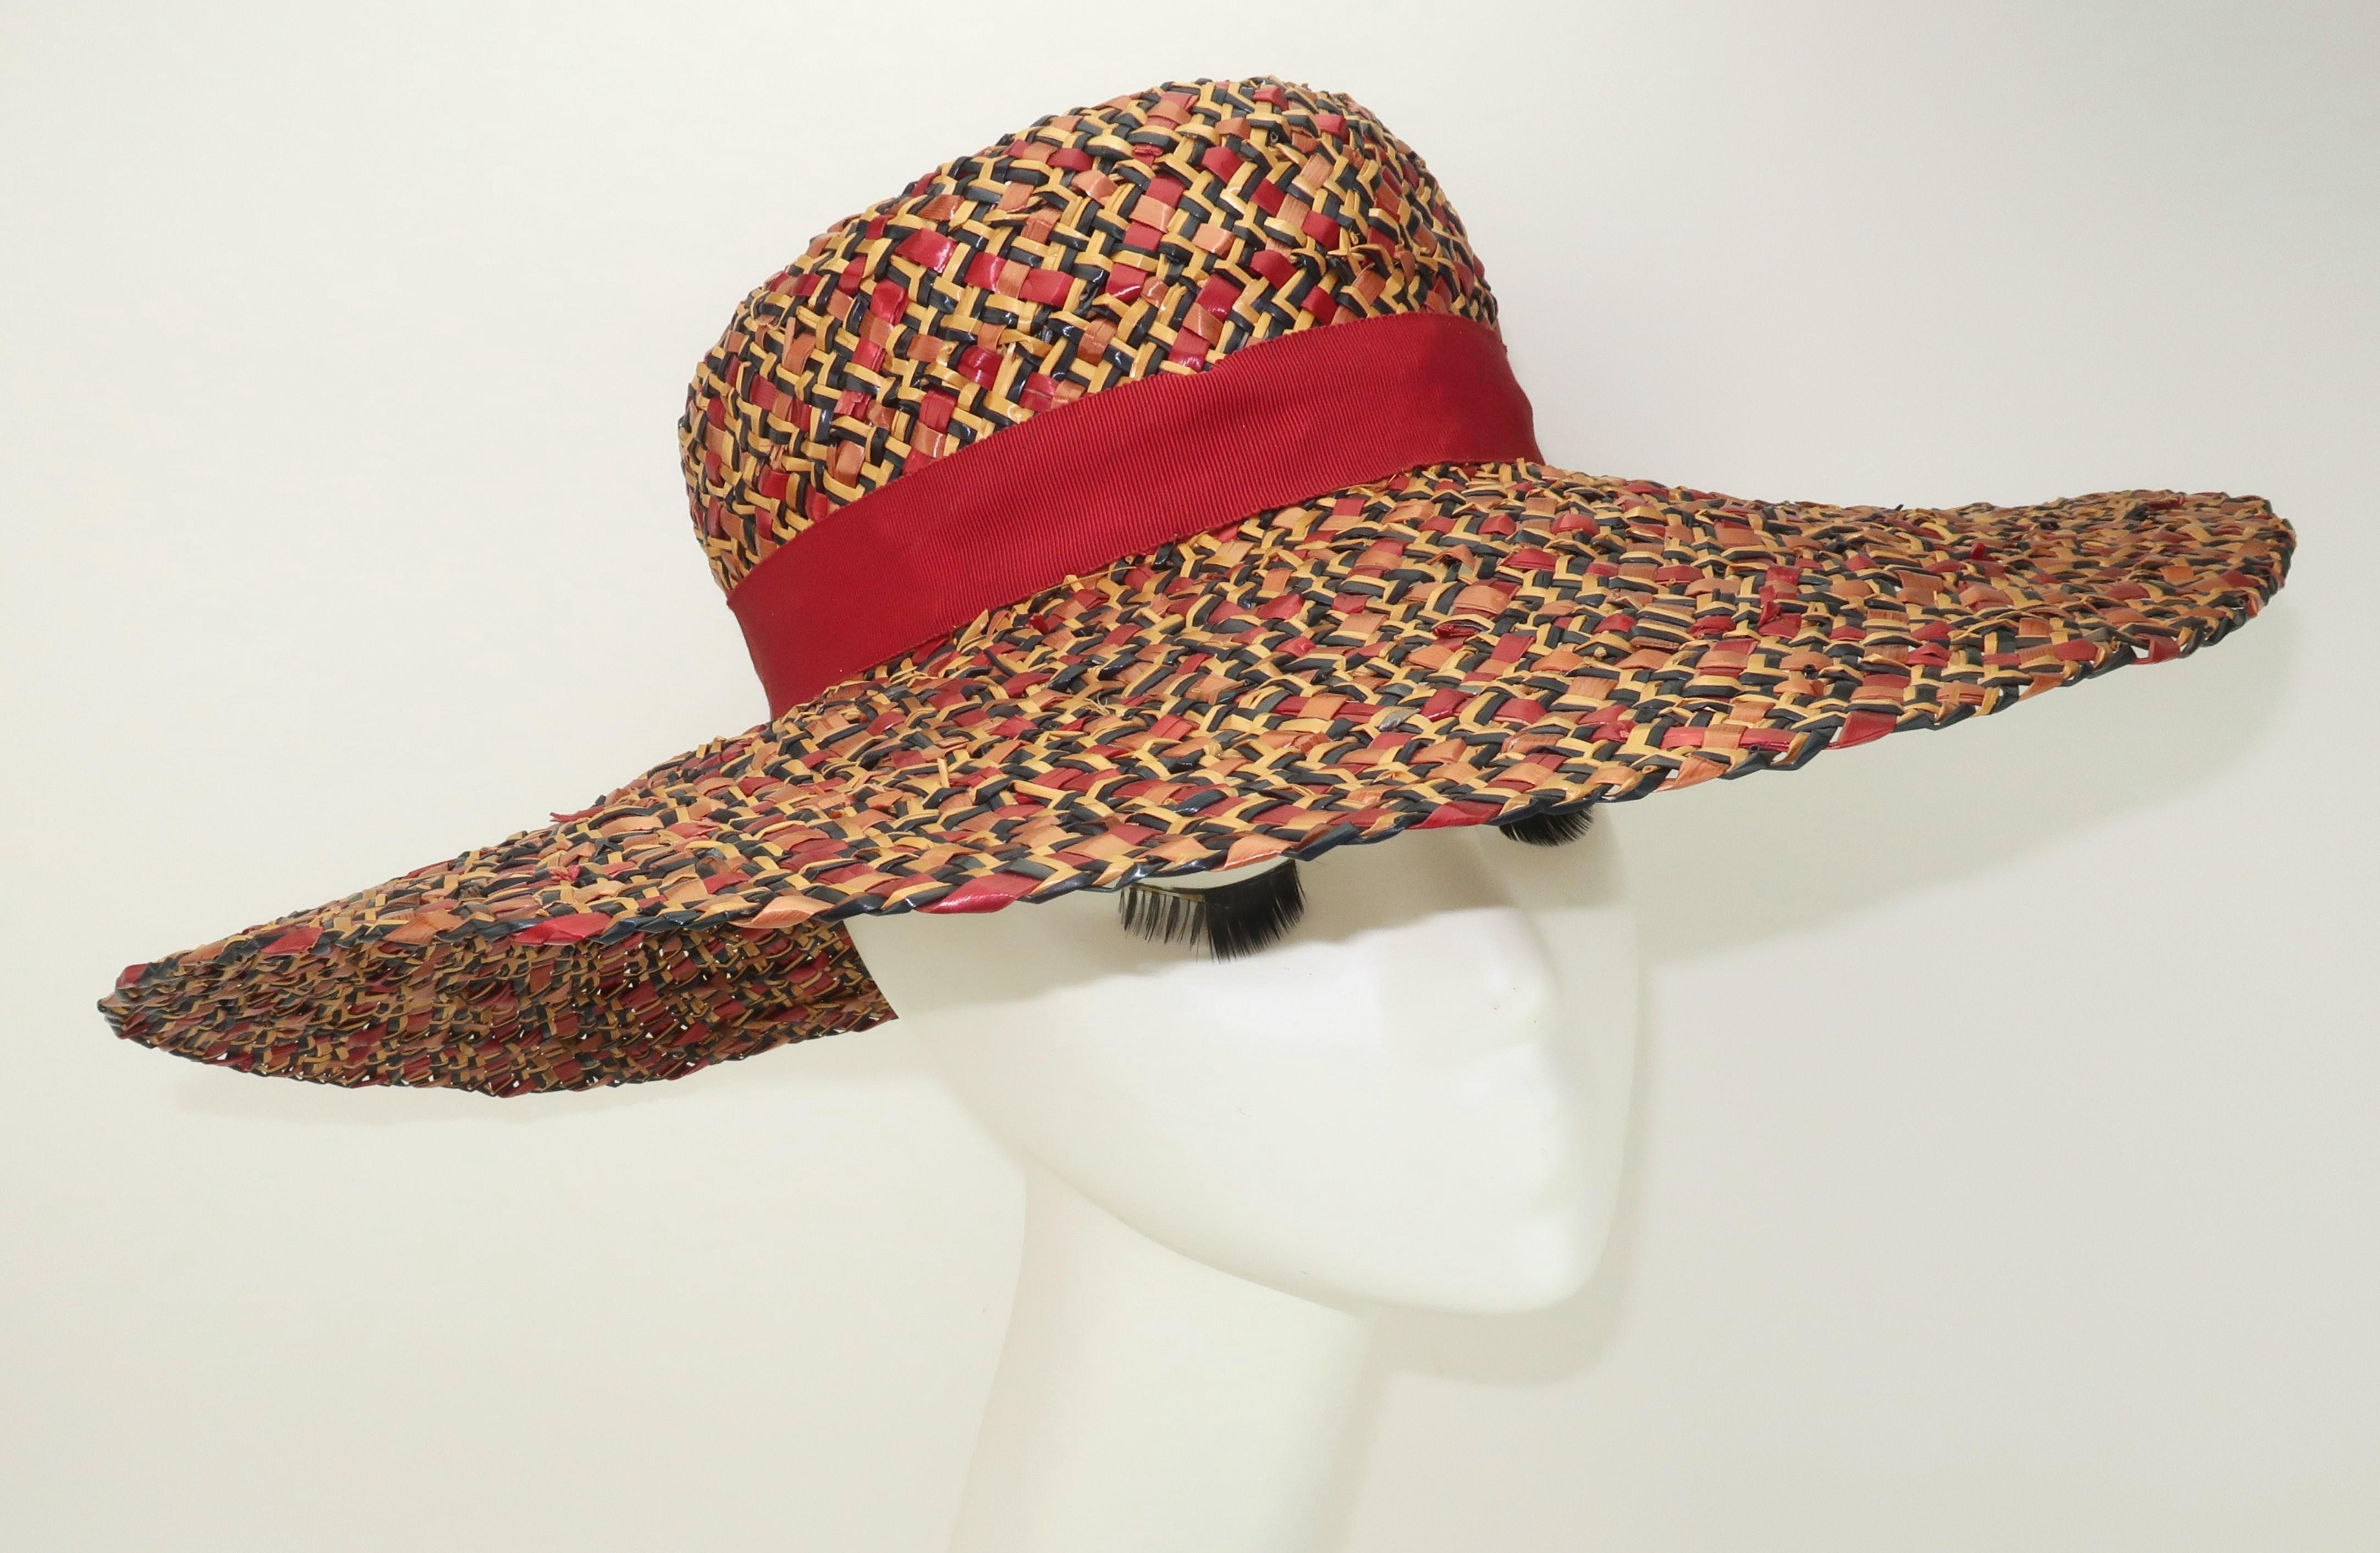 Chapeau de paille à larges bords des années 1940, conçu par Alfred Weil pour les modistes Bernard Workman.  La combinaison de couleurs de paille, dont le rouge rubis, le bleu marine et le tan, donne au tissage un effet tweed qui est élégamment